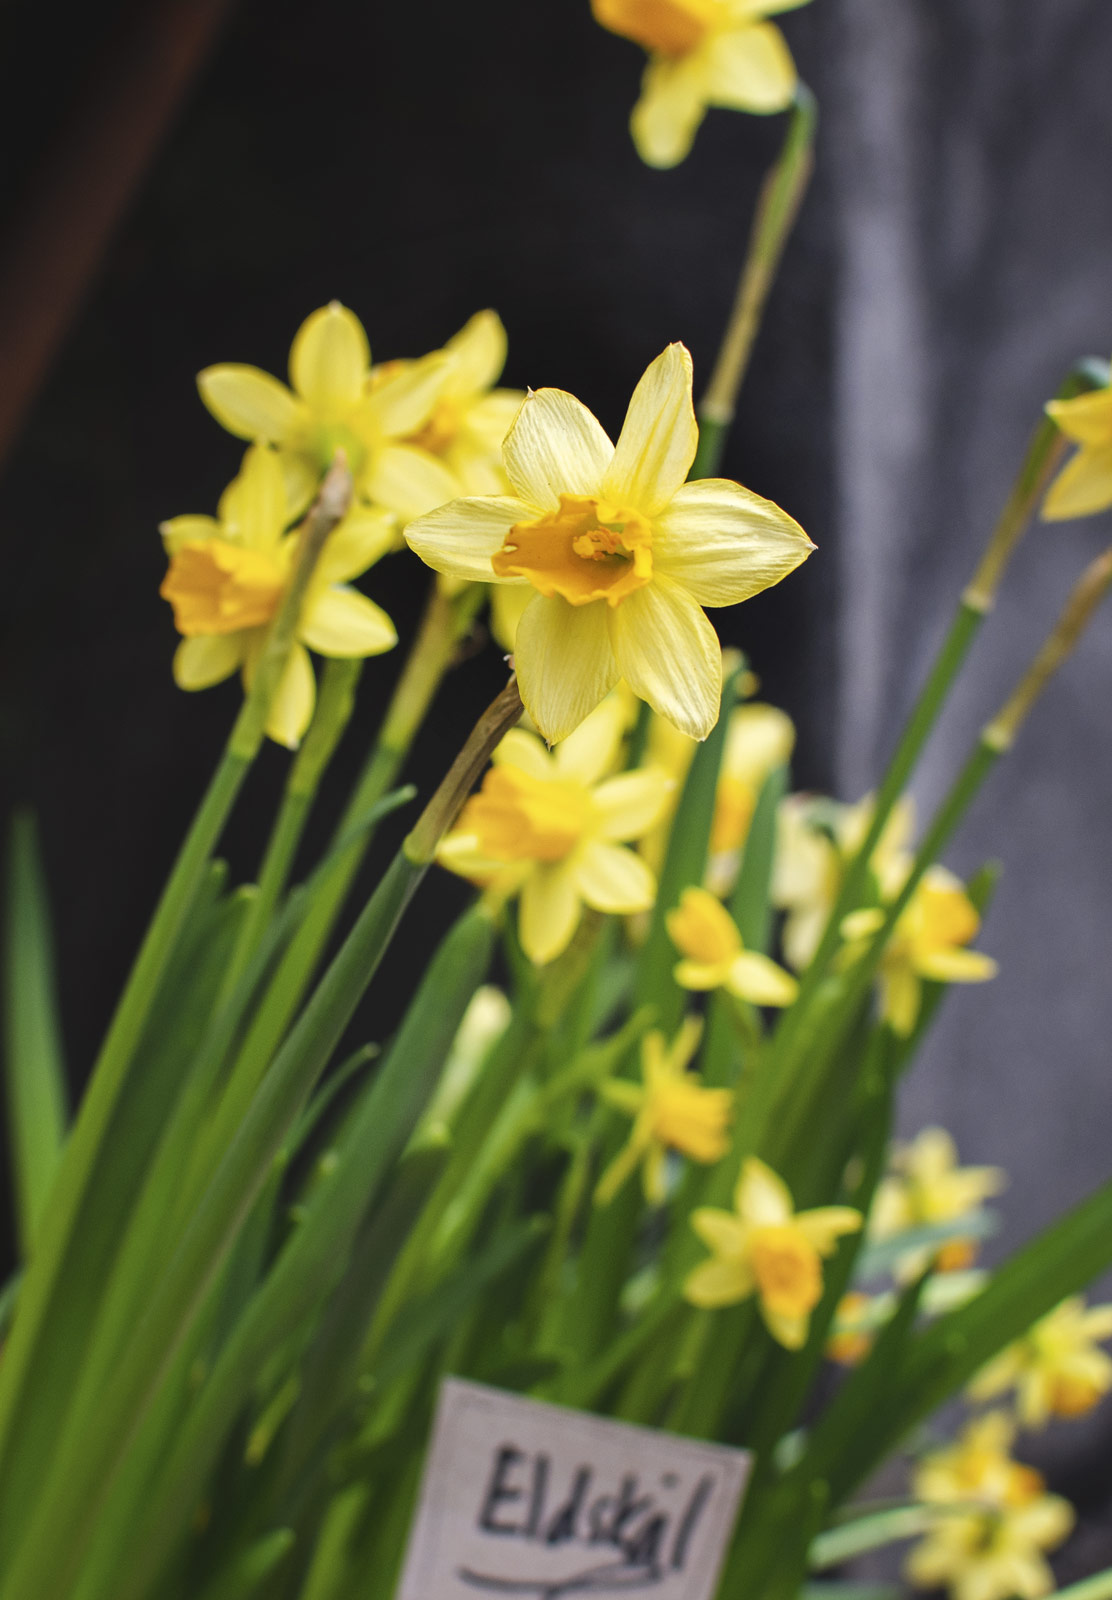 Yellow daffodil heads